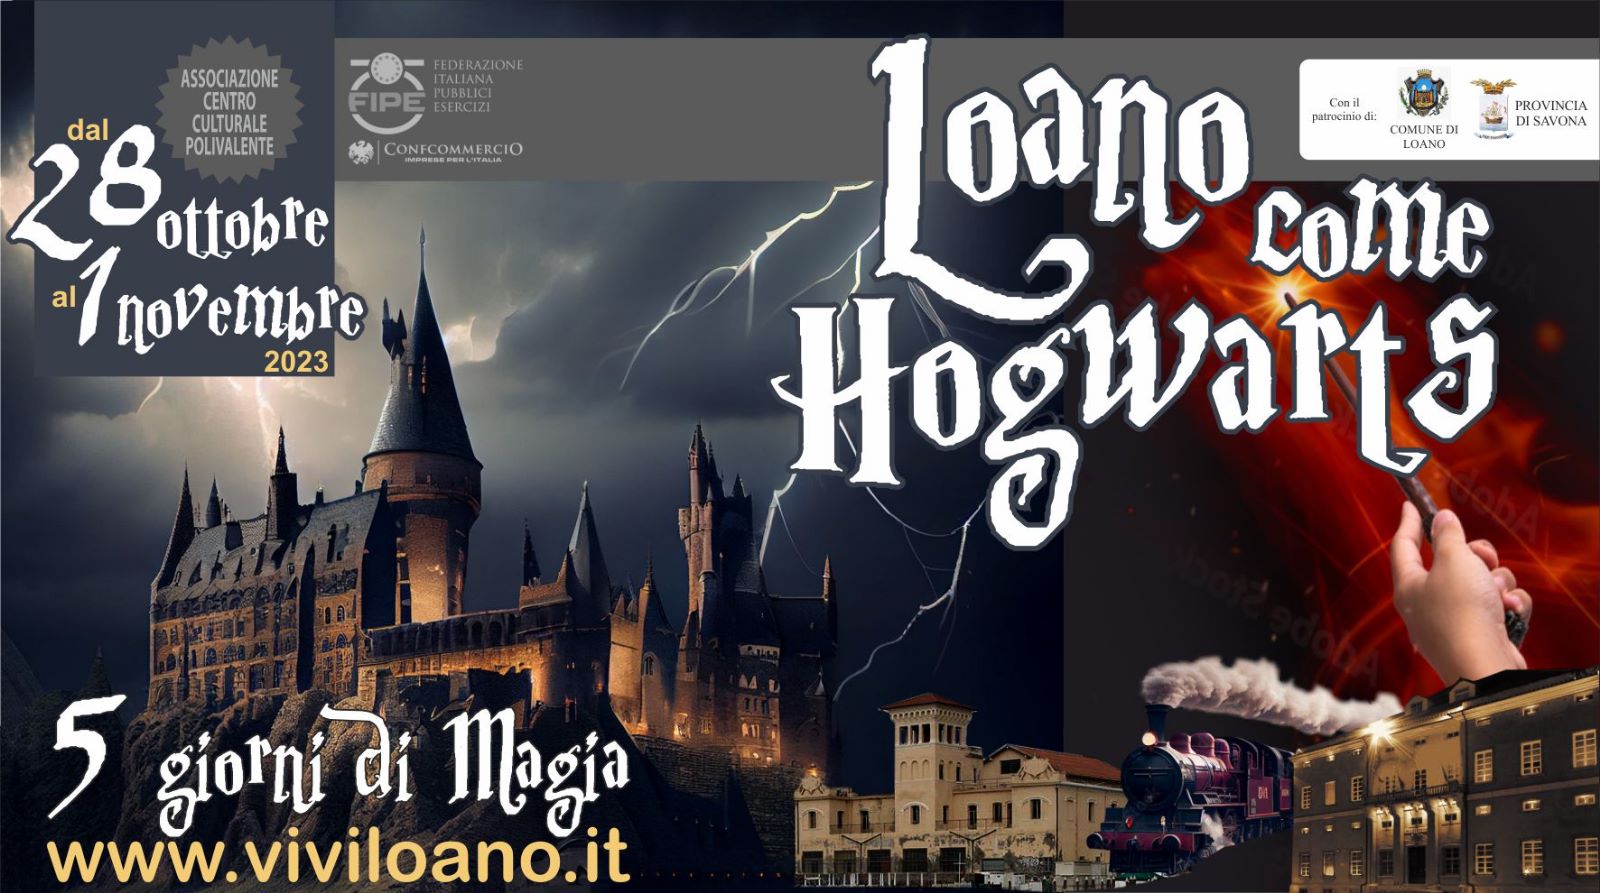 Hogwarts a Loano, l’evento italiano per i fan di Harry Potter